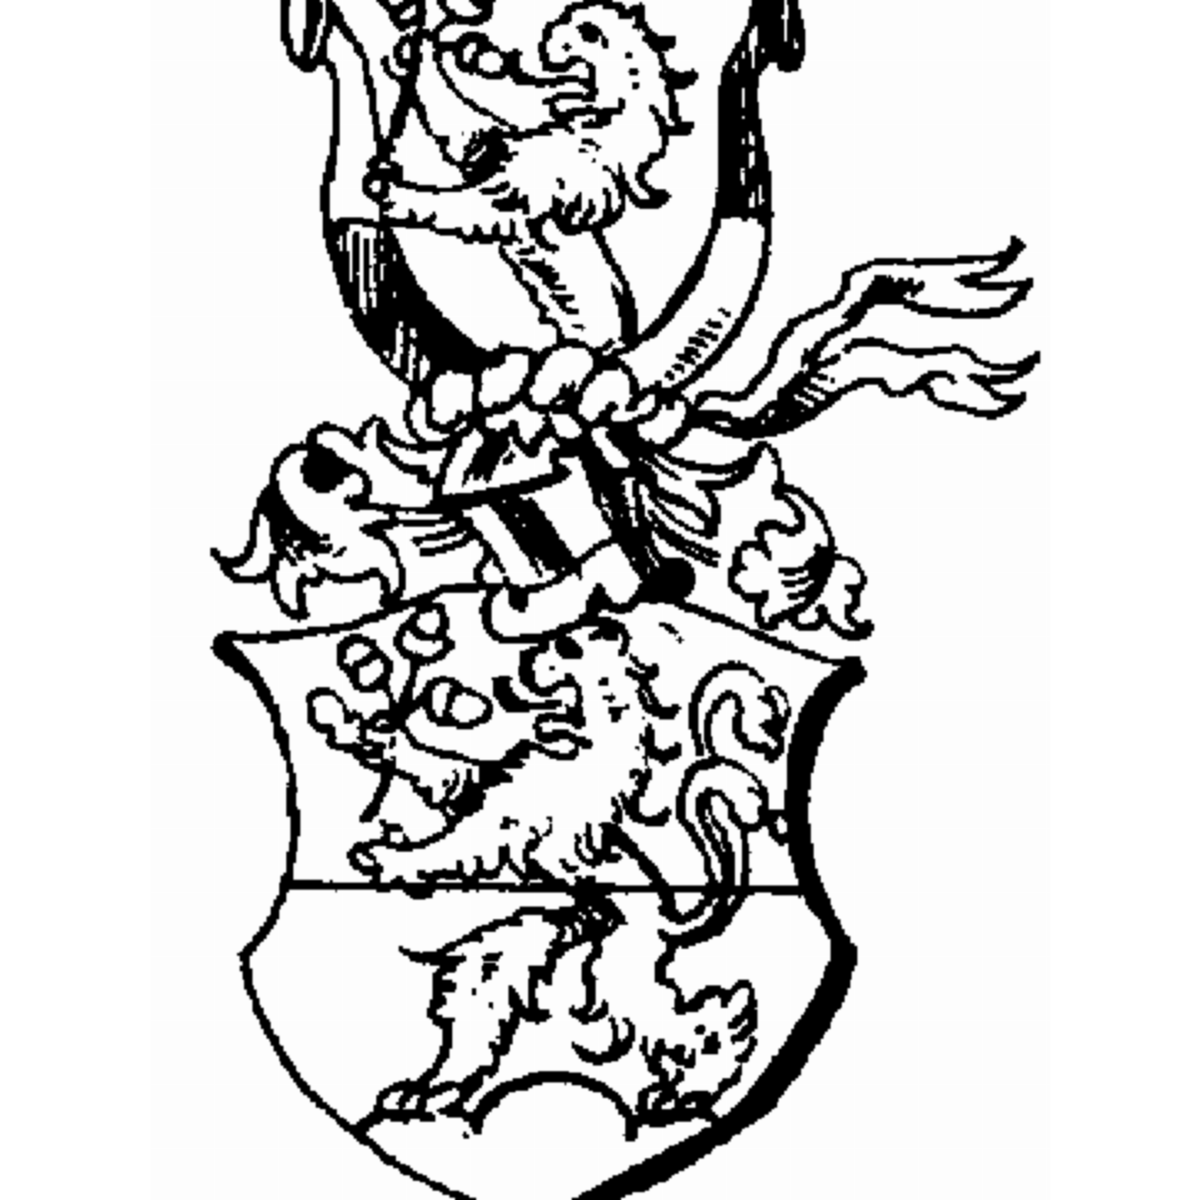 Coat of arms of family Vicari